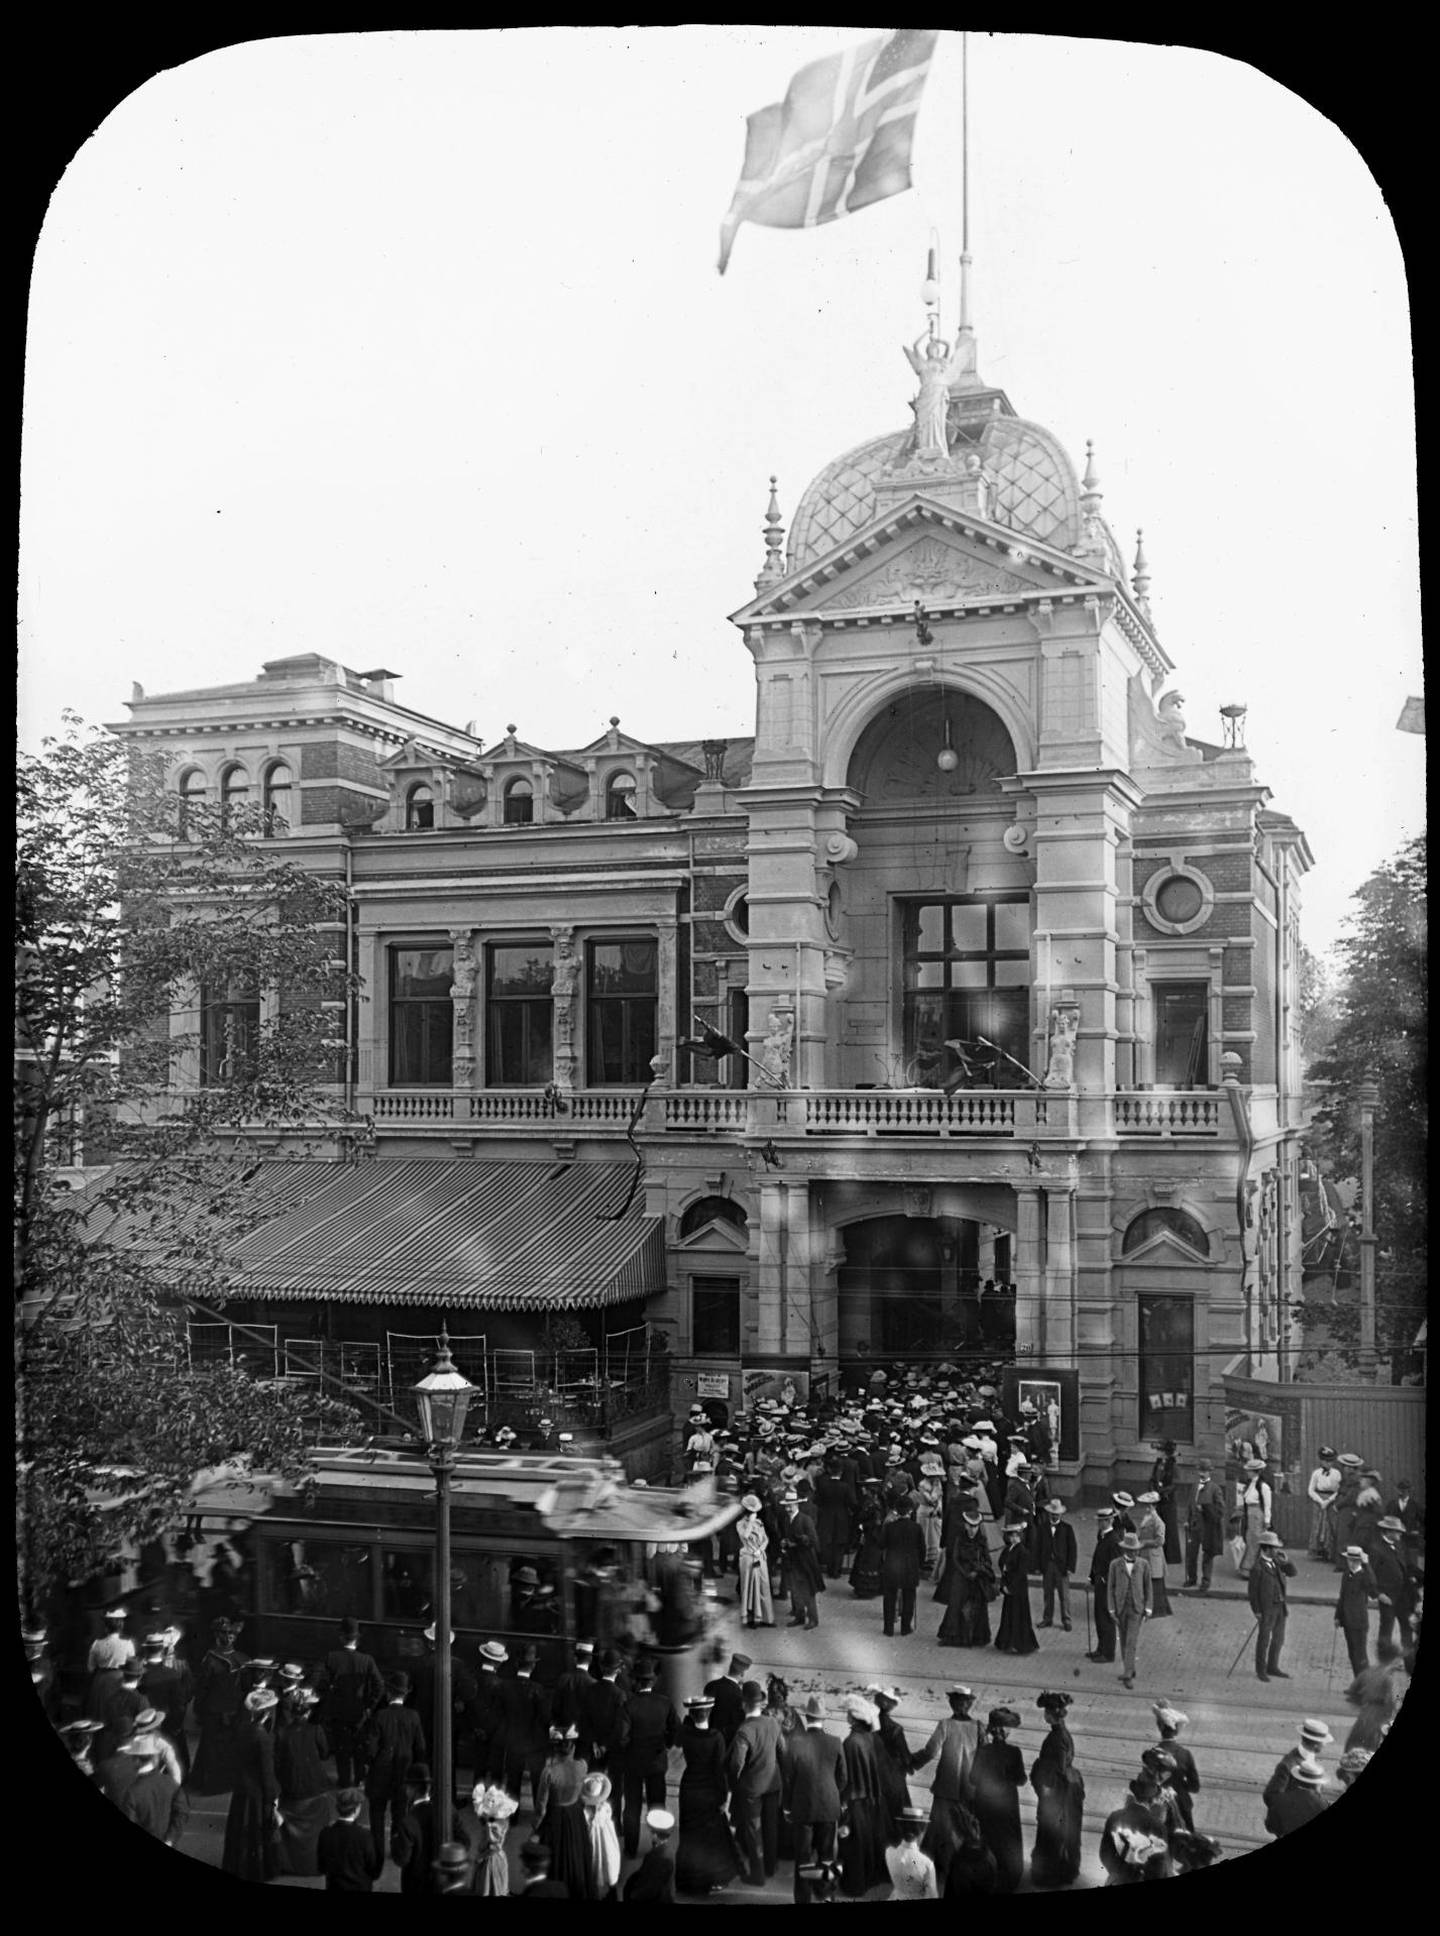 I 1890 fikk Tivoli ny hovedbygning kombinert med inngangsportal mot Stortingsgata. Den inneholdt bl.a. kafé, biljardsalong, flere restauranter og høy terrasse med servering ut mot gata. Bildet er fra en dag i 1895–1900 med stor tilstrømning.